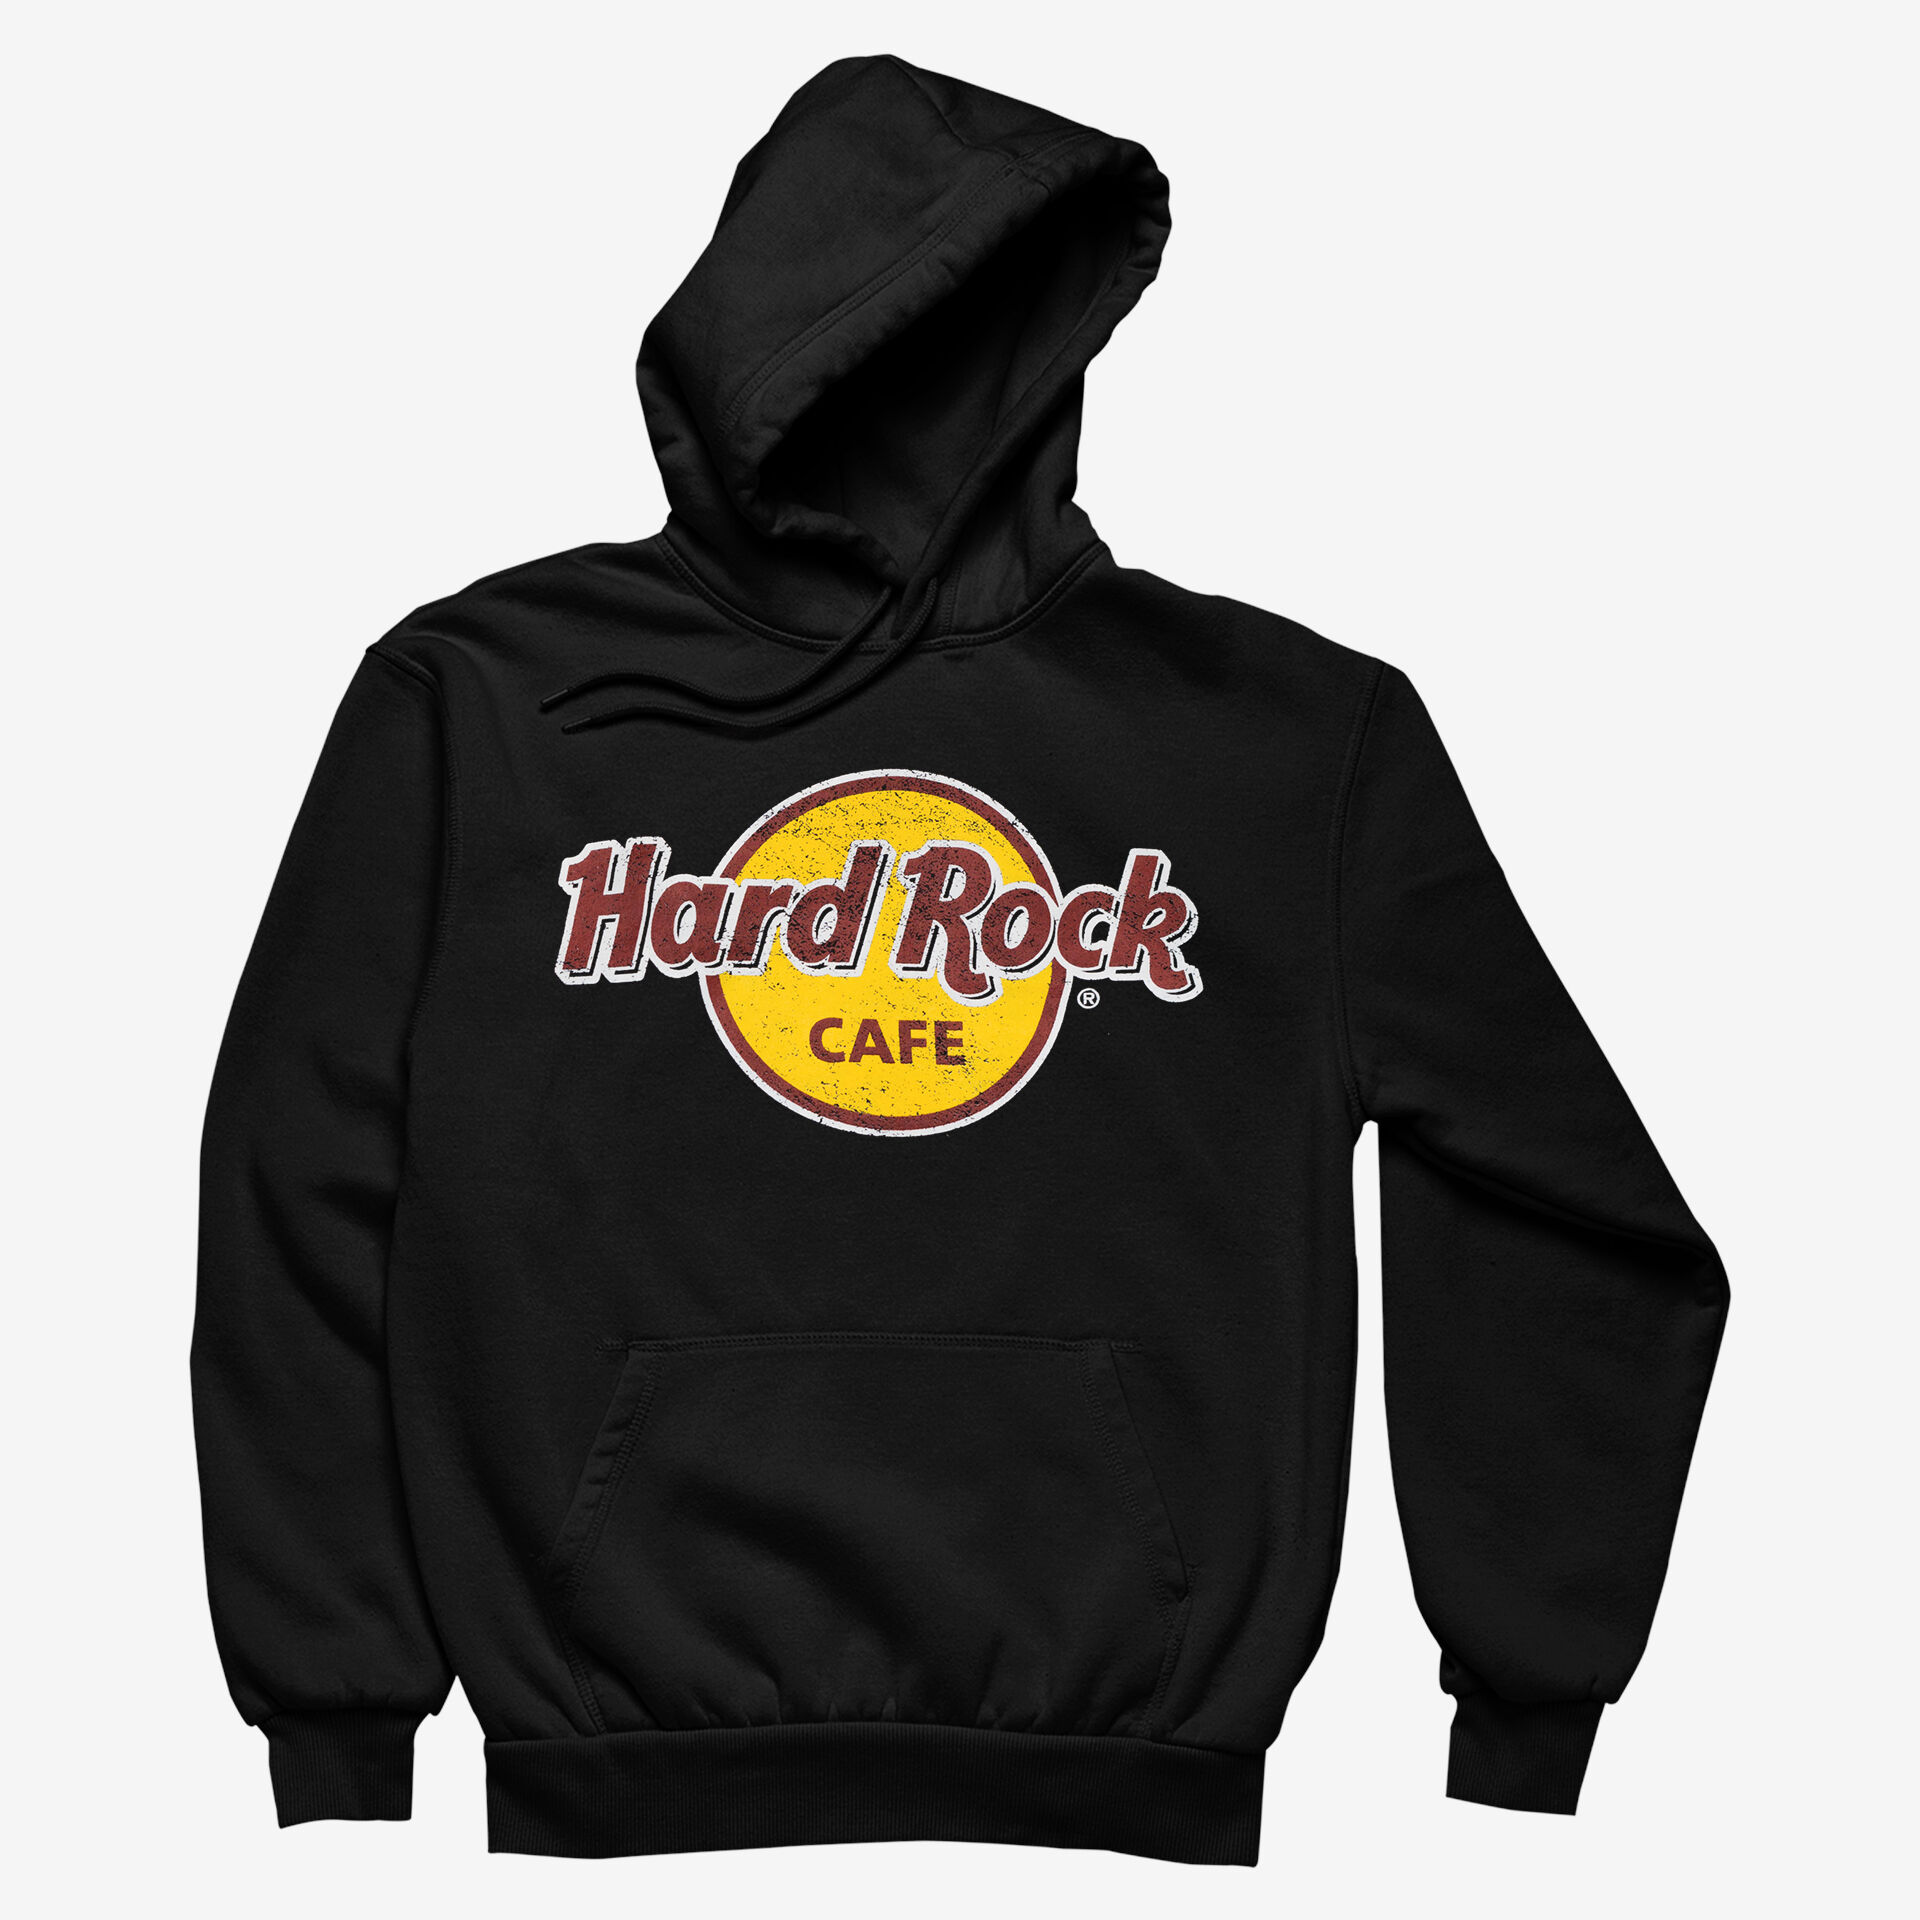 Hard Rock - Online Rock Shop - HOODIES